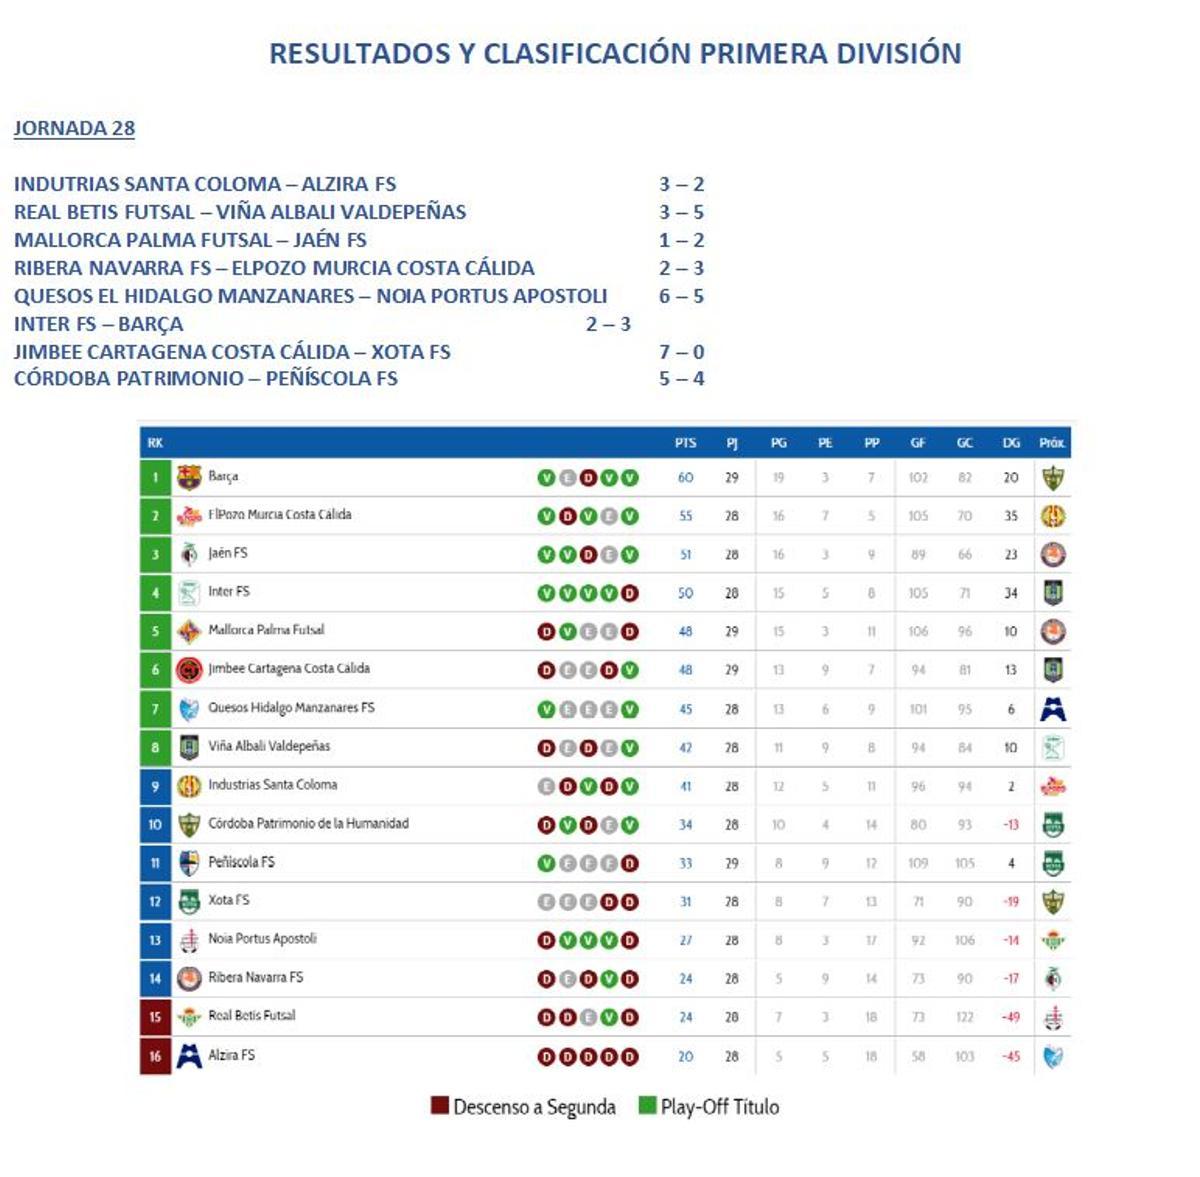 Resultados y clasificación de Primera División.